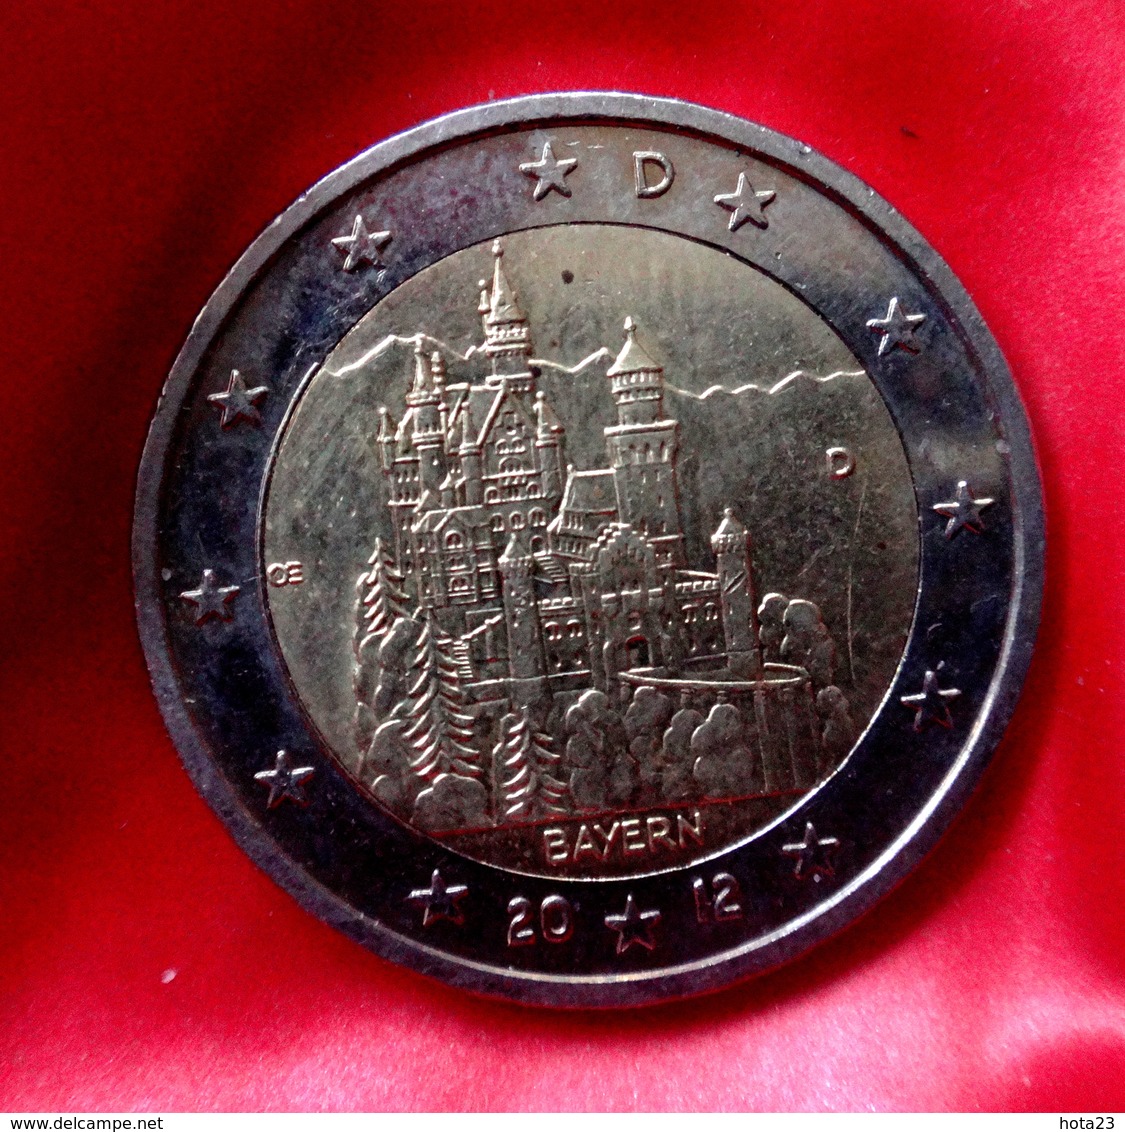 GERMANY - 2 €  -  D  -  Euro Coin 2012 Bayern Neuschwanstein Castle Deutschland CIRCULEET  COIN - Allemagne